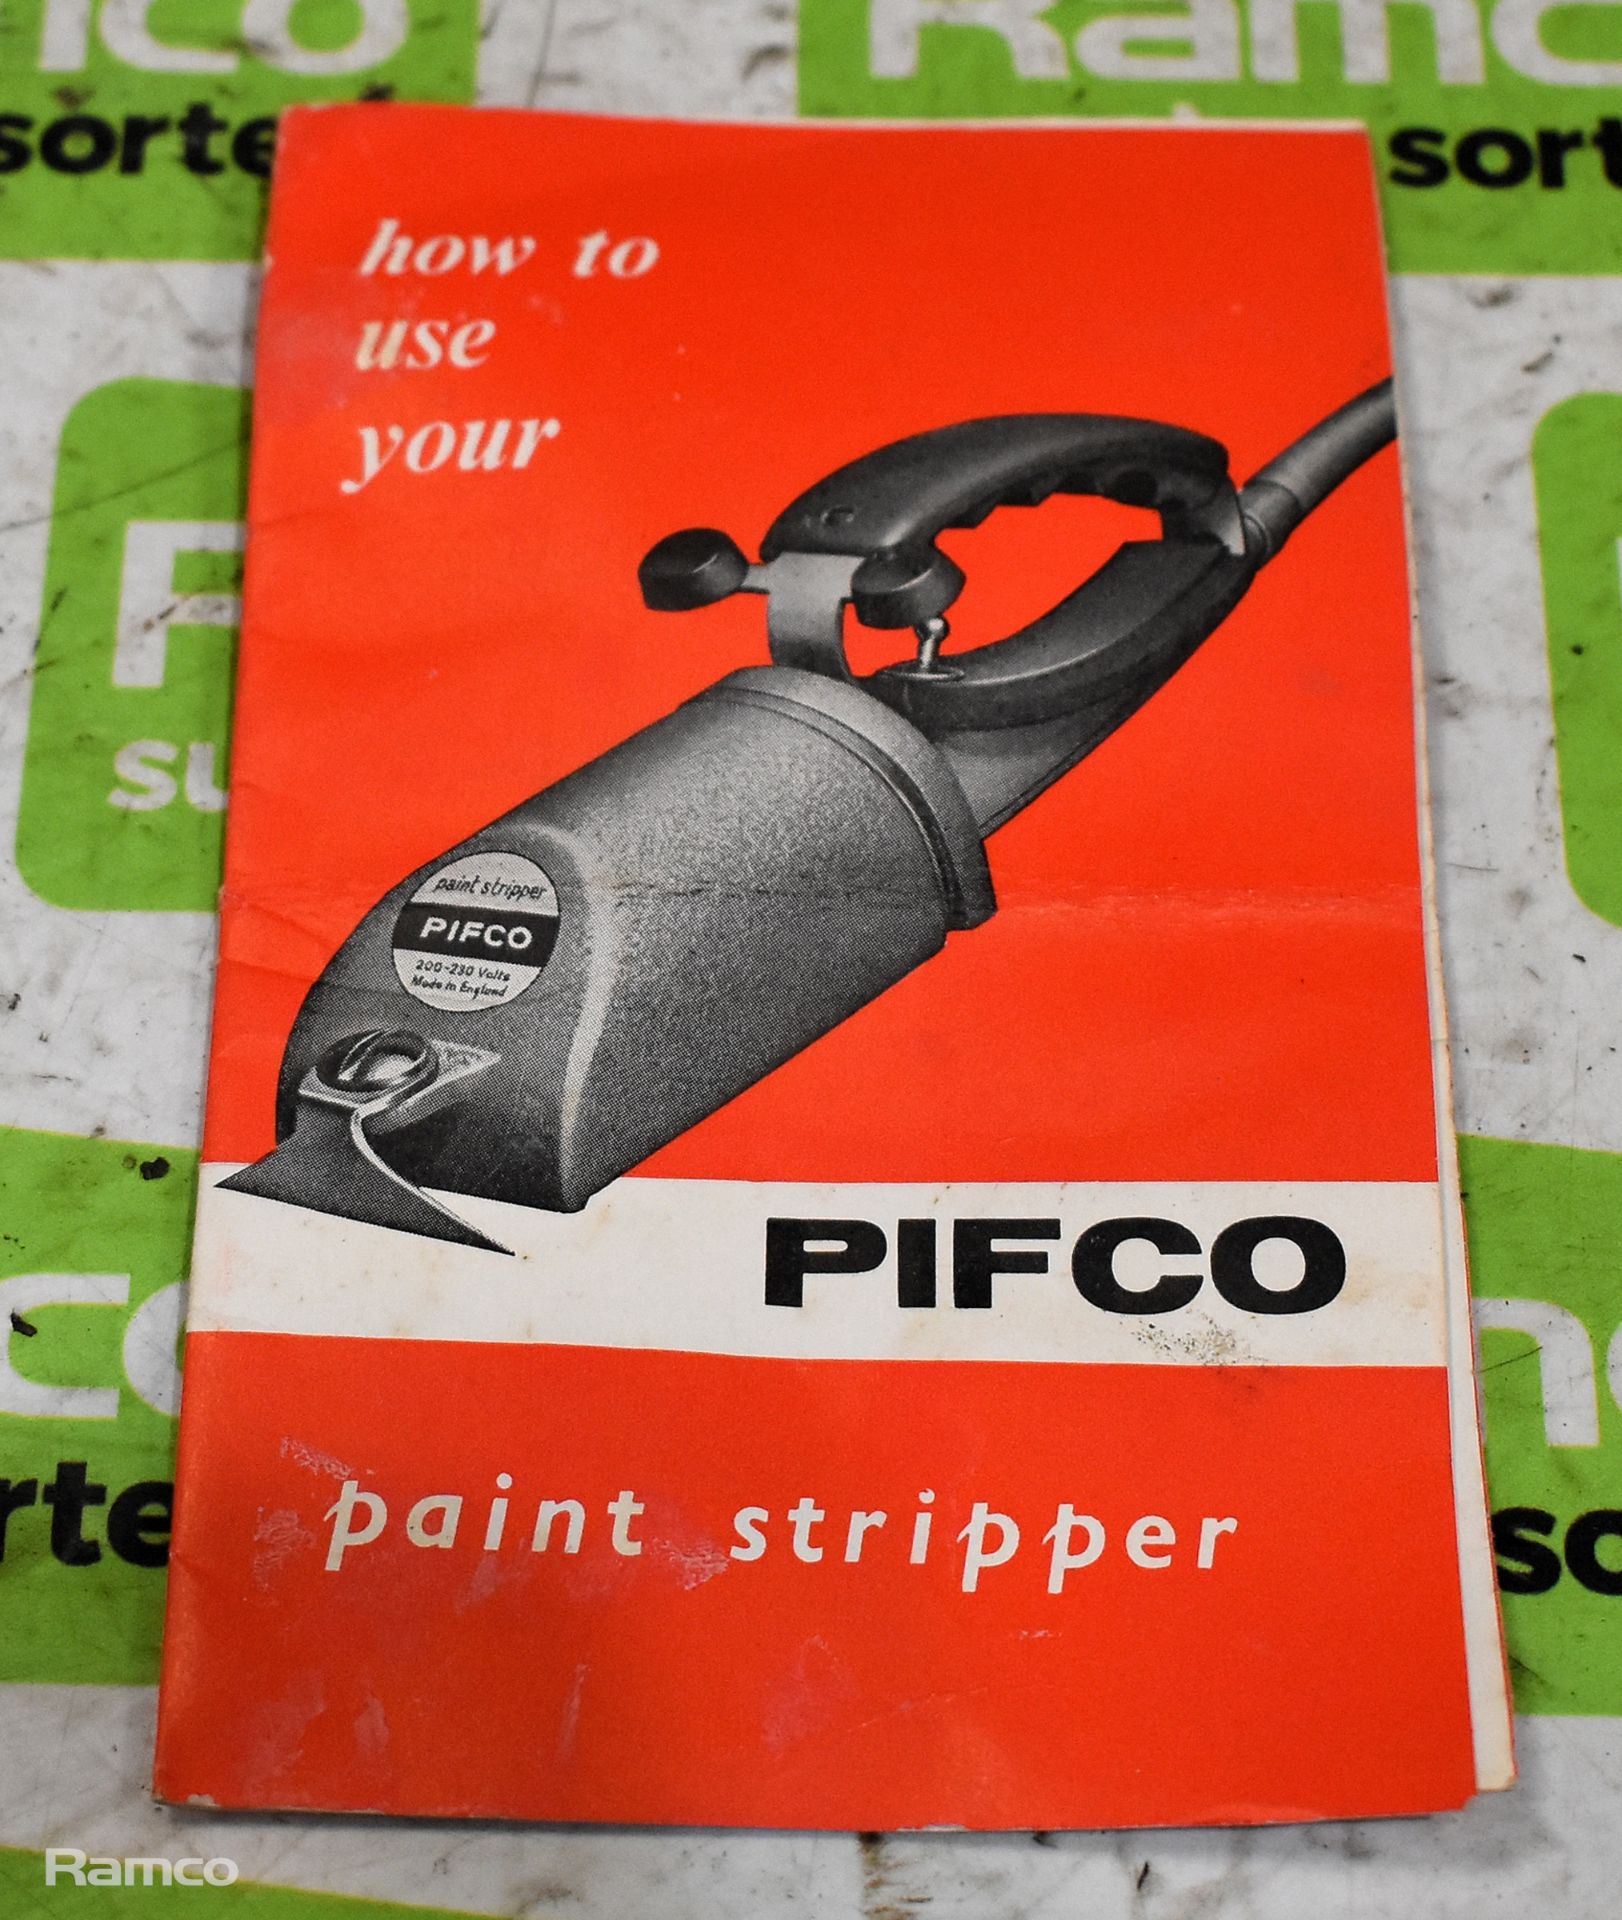 Pifco electric paint stripper - Bild 7 aus 8